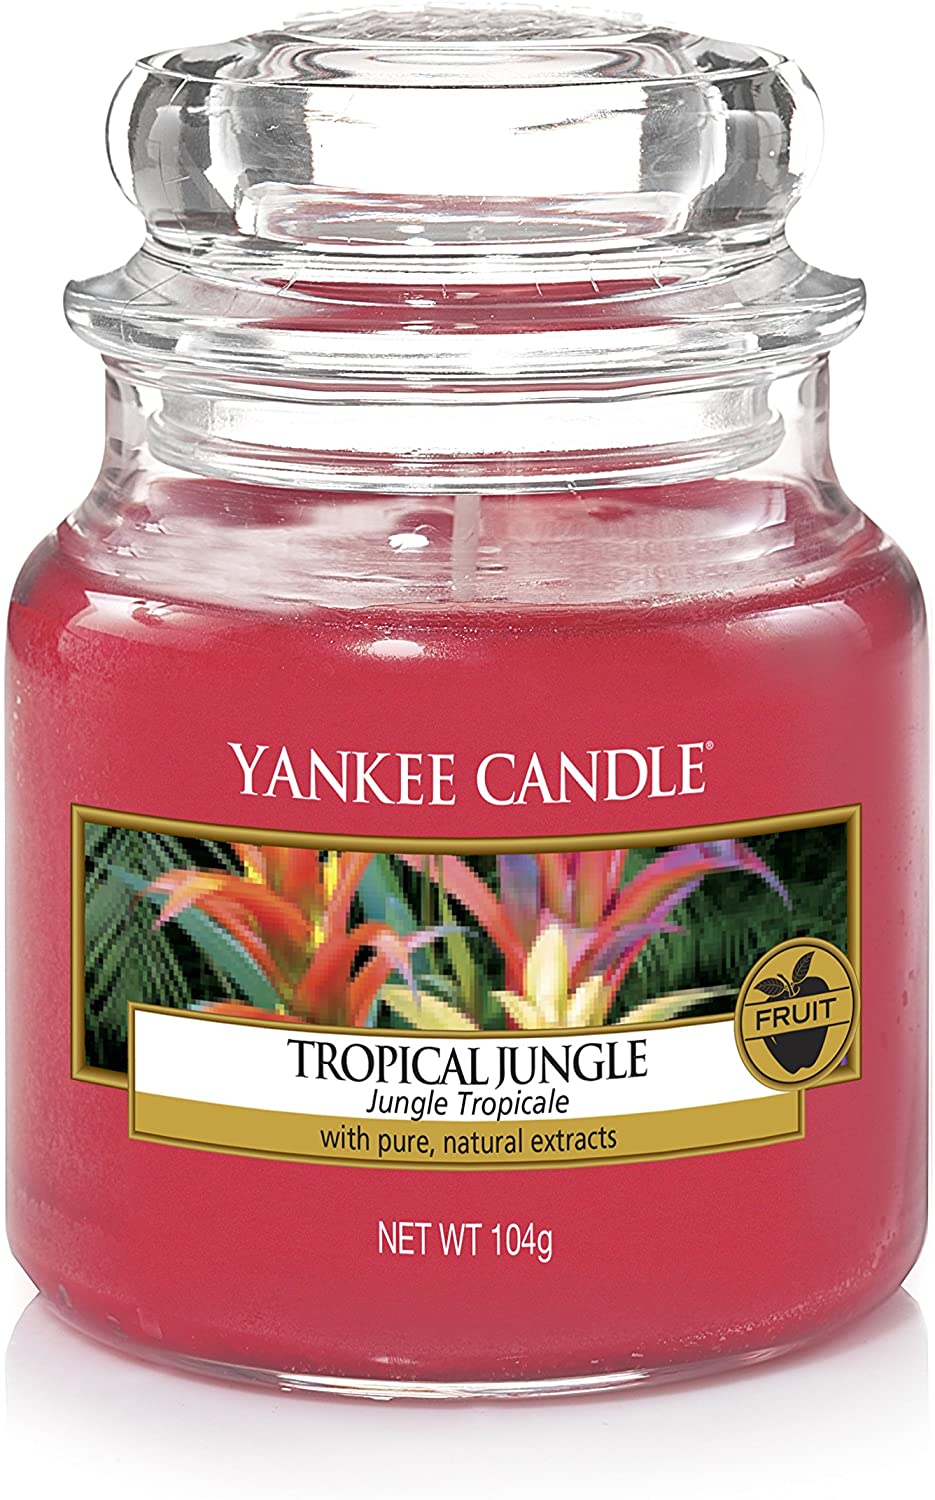 Yankee Candle Tropical Jungle Giara Piccola